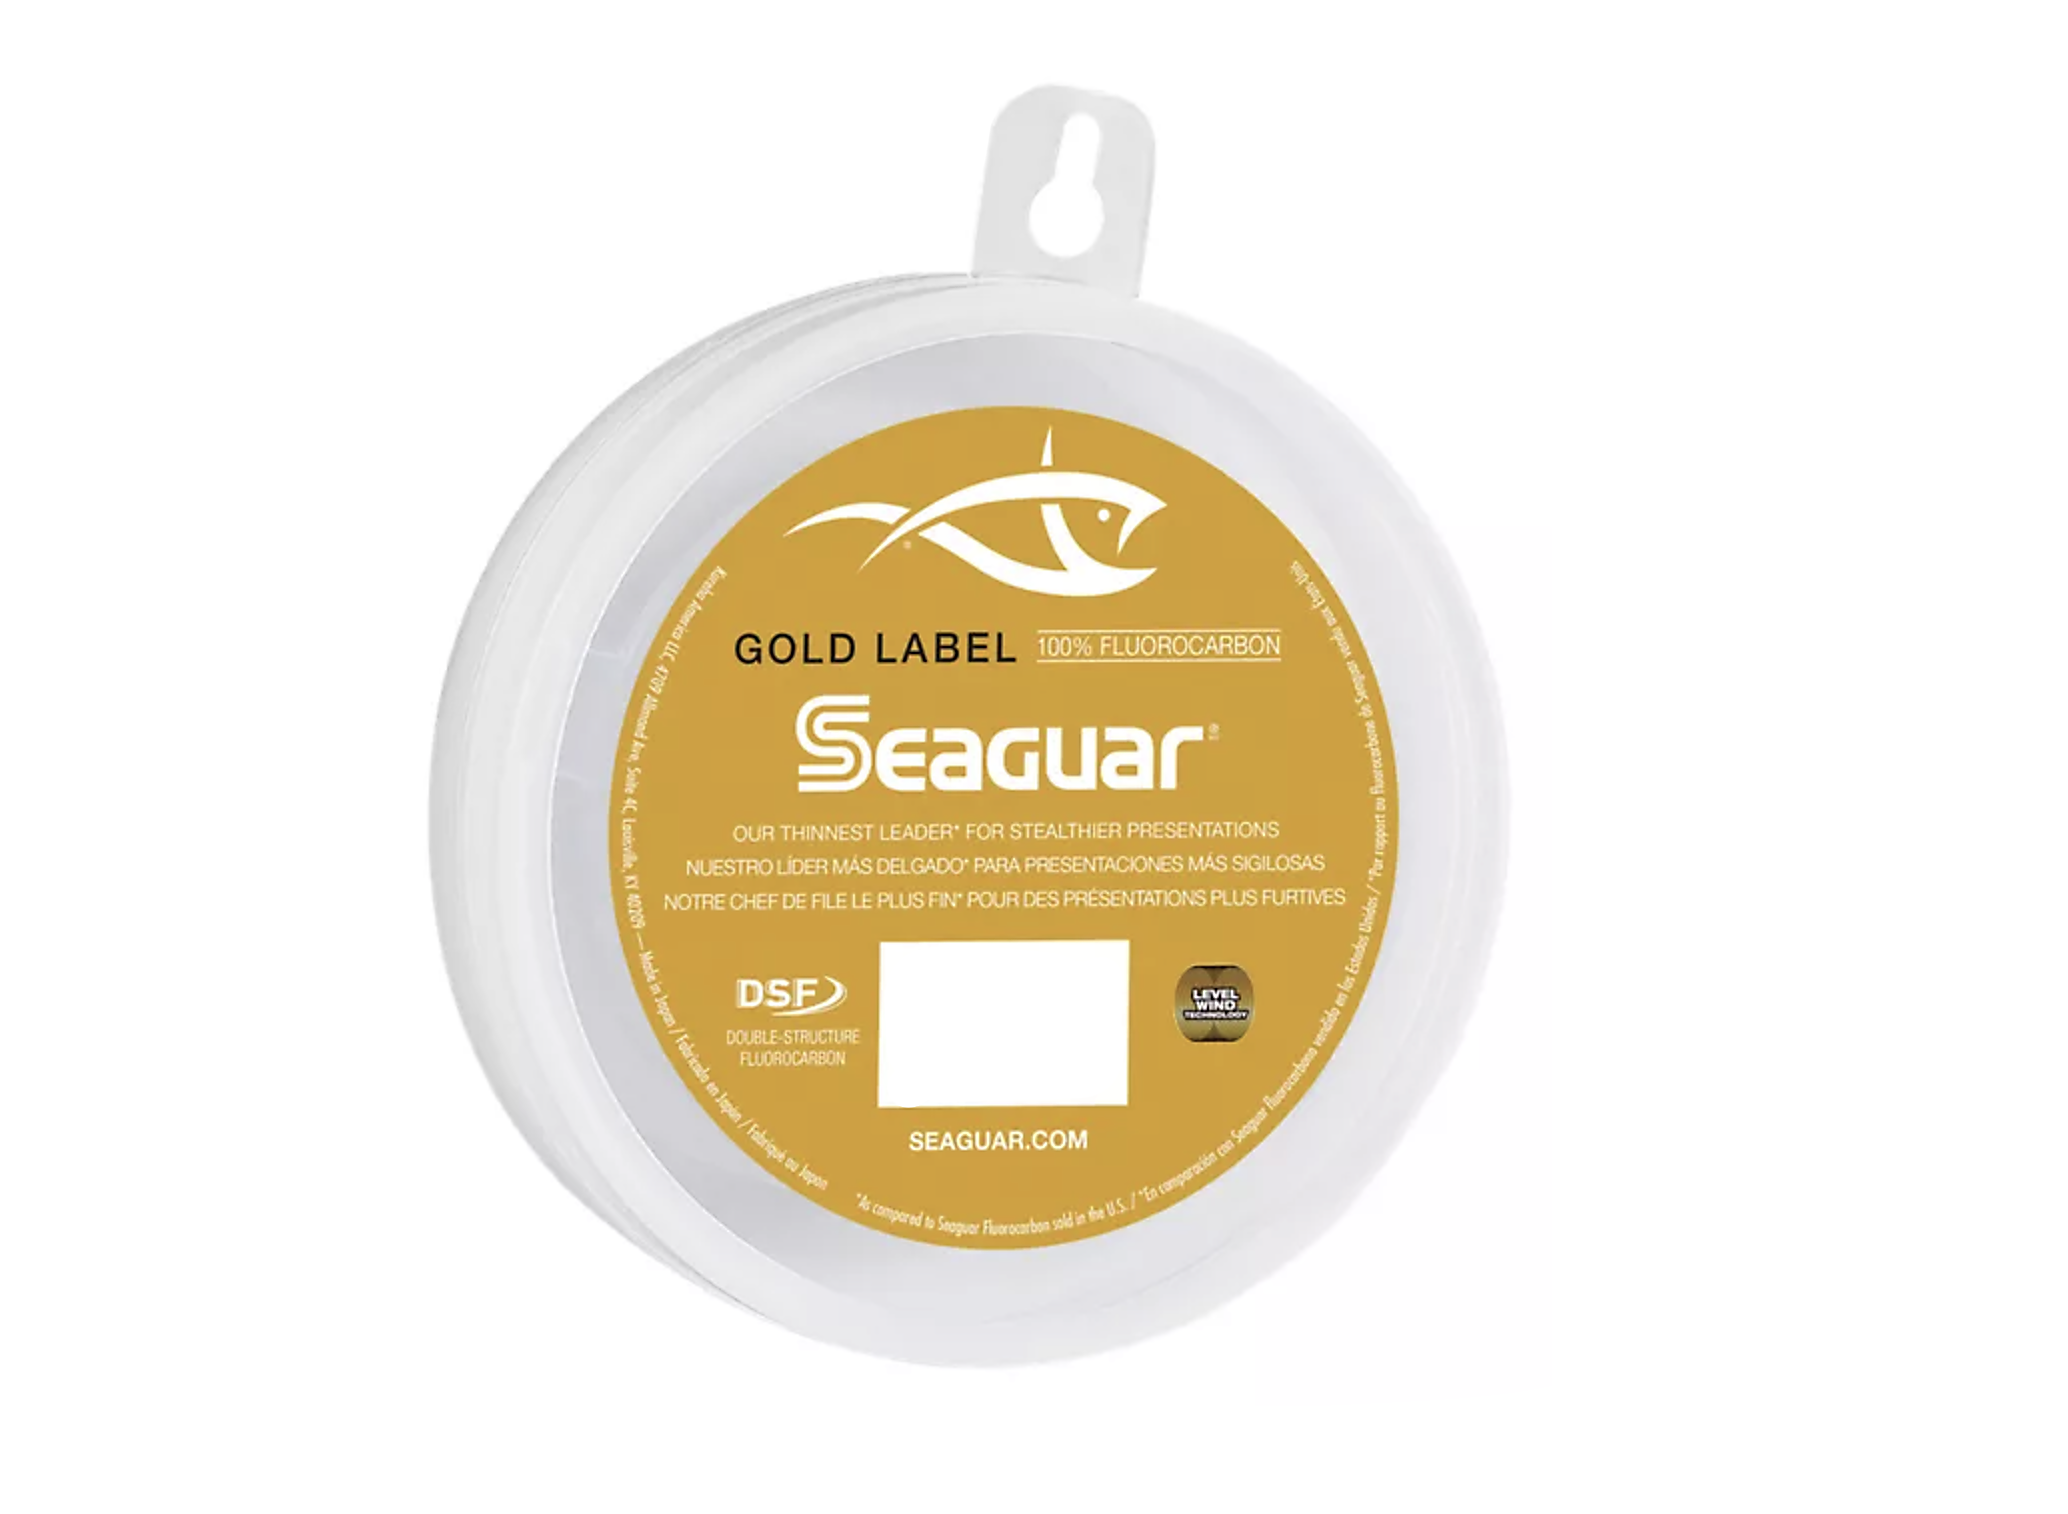 Seaguar Gold Label Fluorocarbon